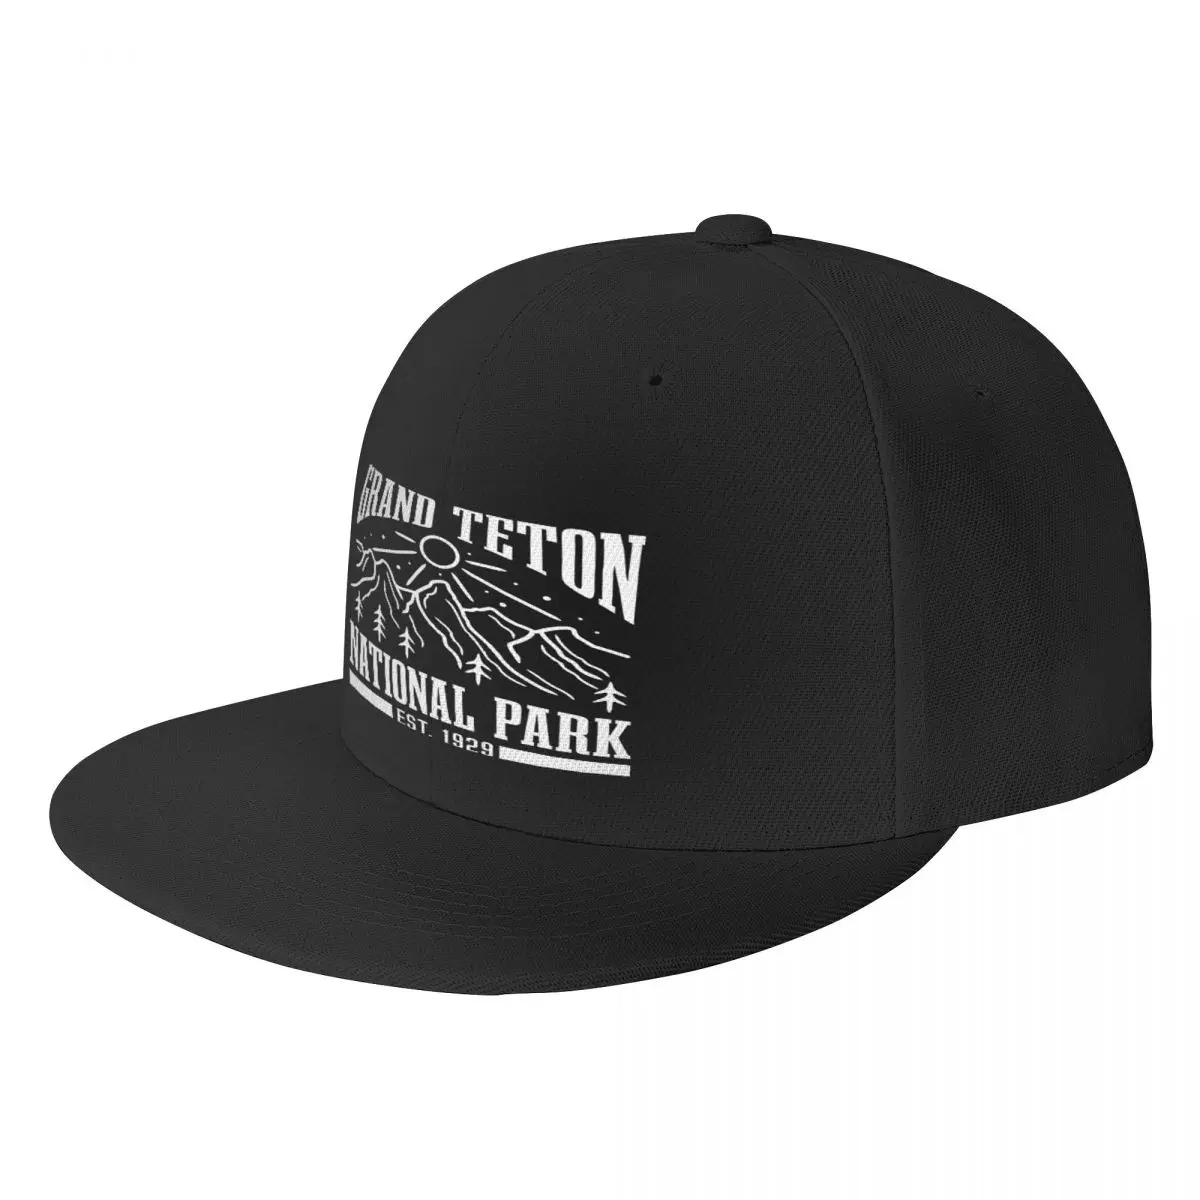 

Шляпа с плоским покрытием Grand Teton National Park Wyoming, бейсболка, индивидуальная унисекс, подходит для ежедневного хорошего подарка